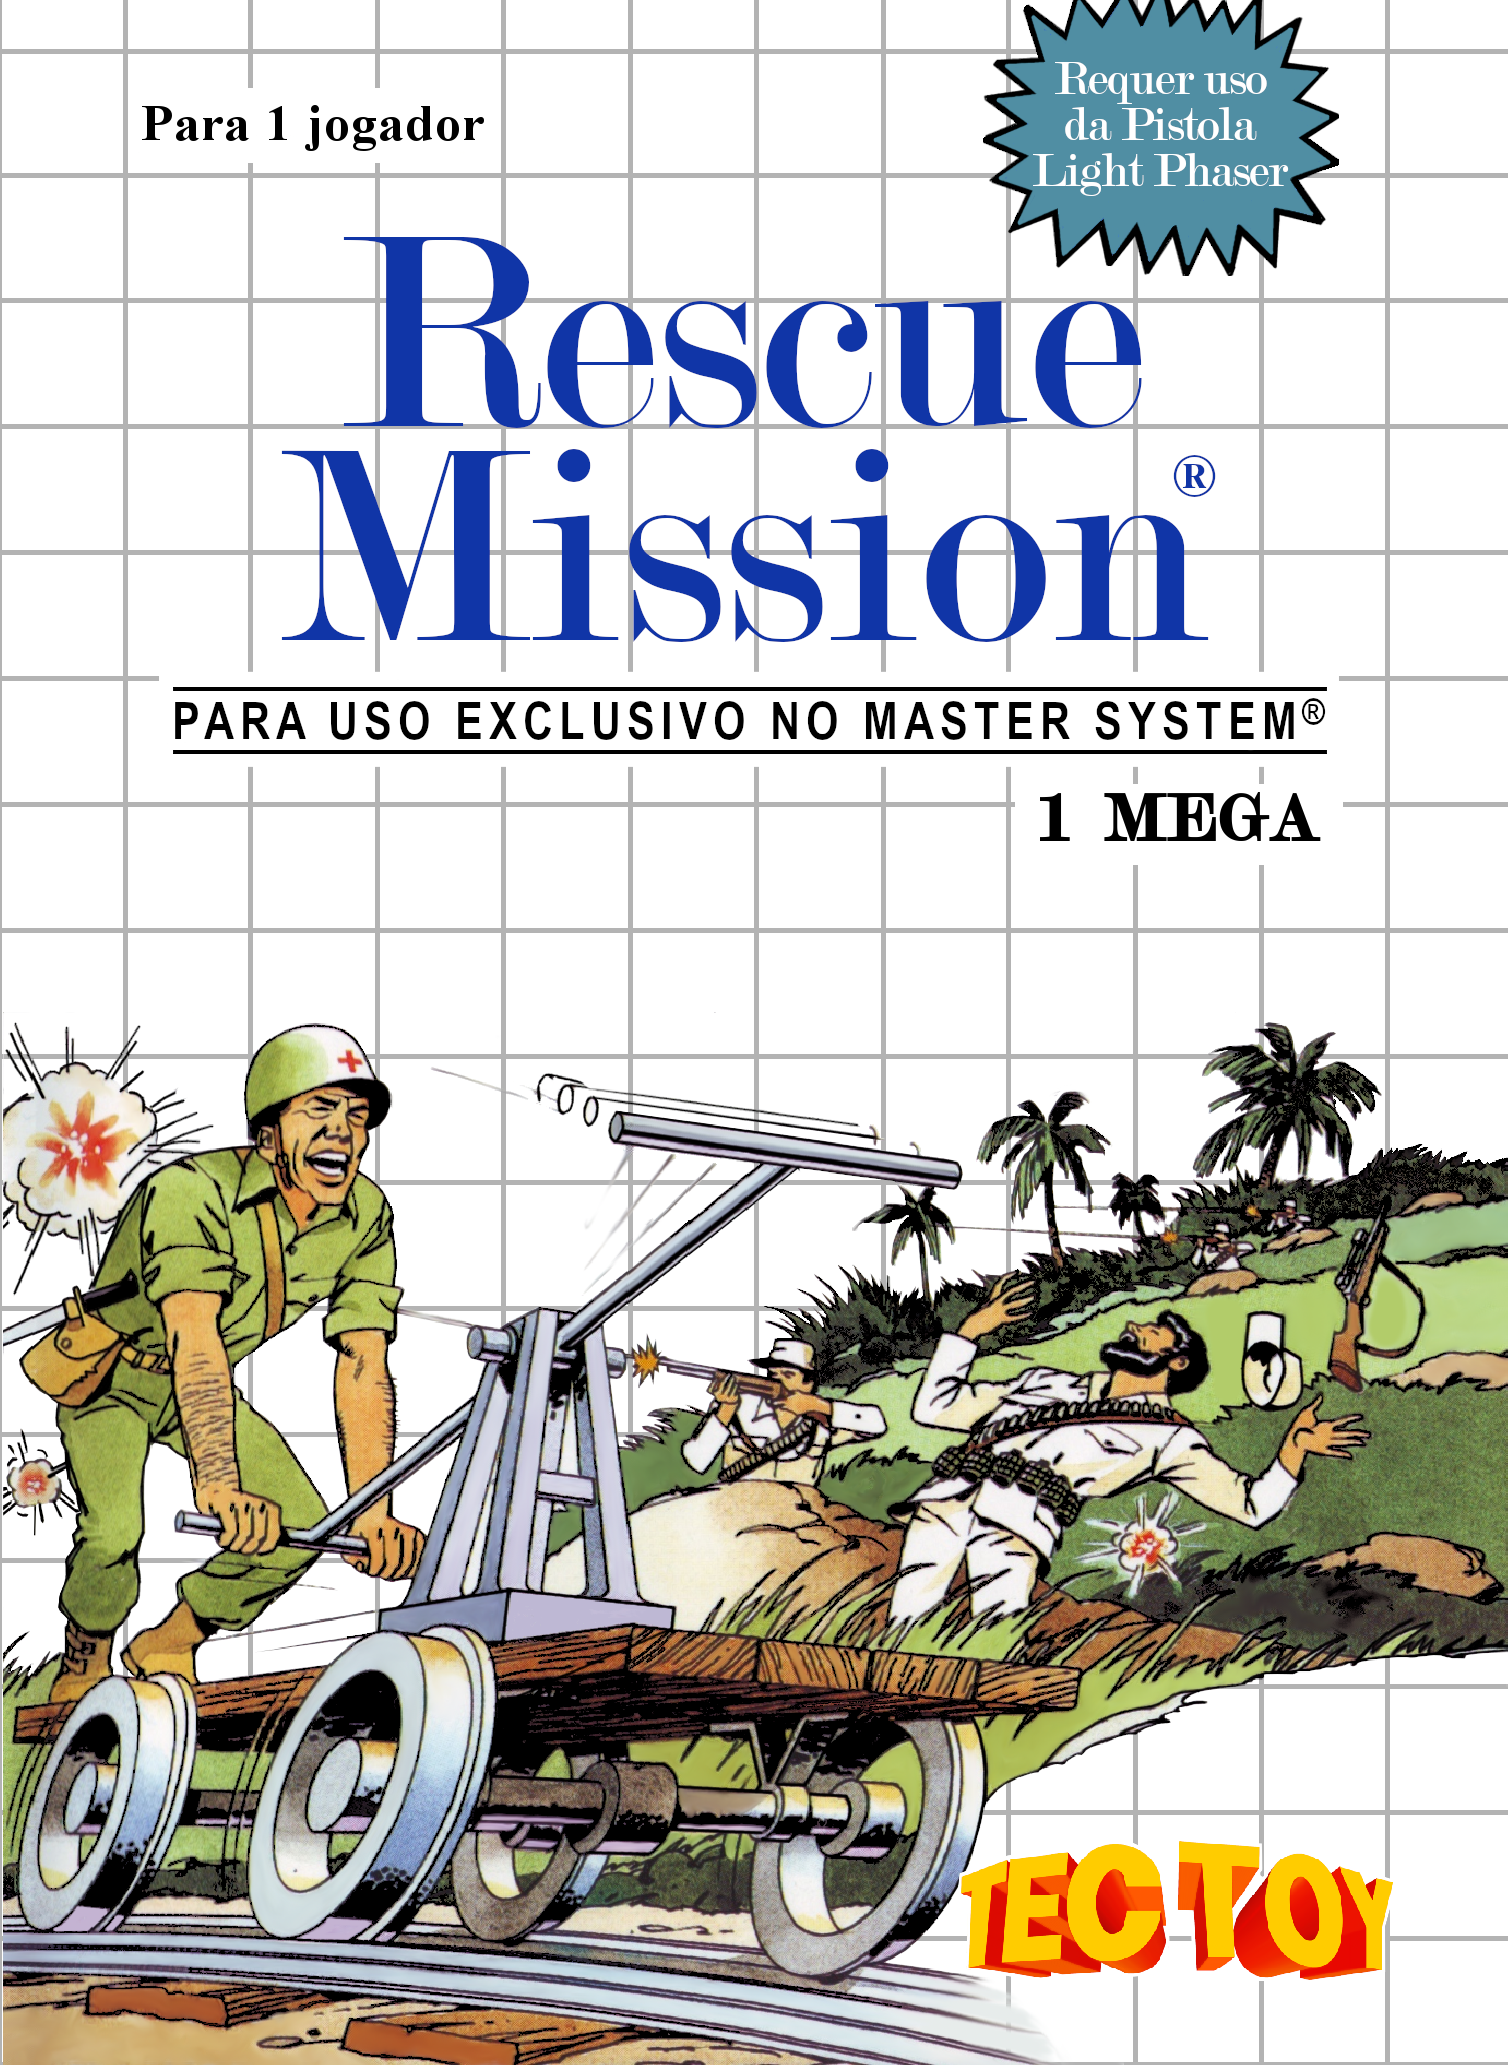 'Rescue Mission'